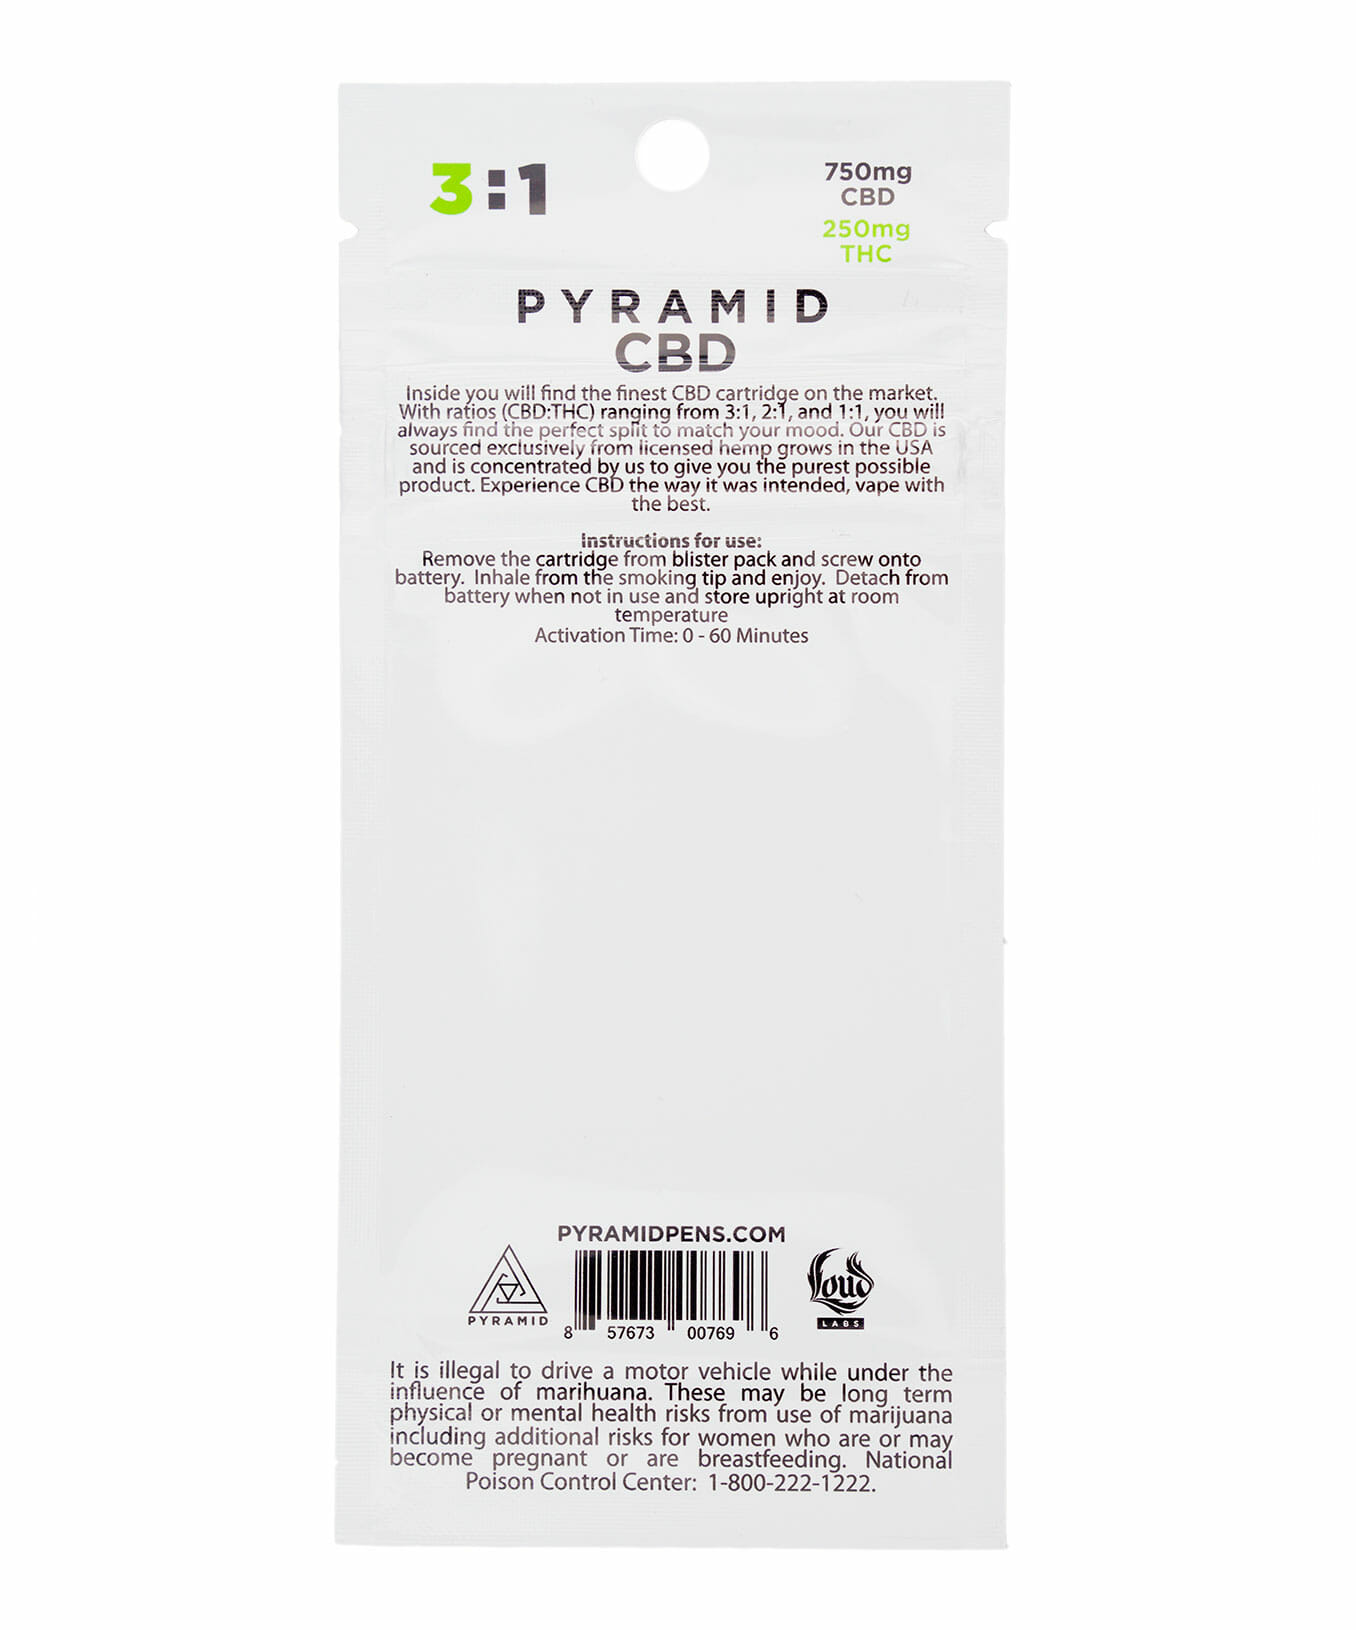 3:1 Pyramid CBD/THC cartridge